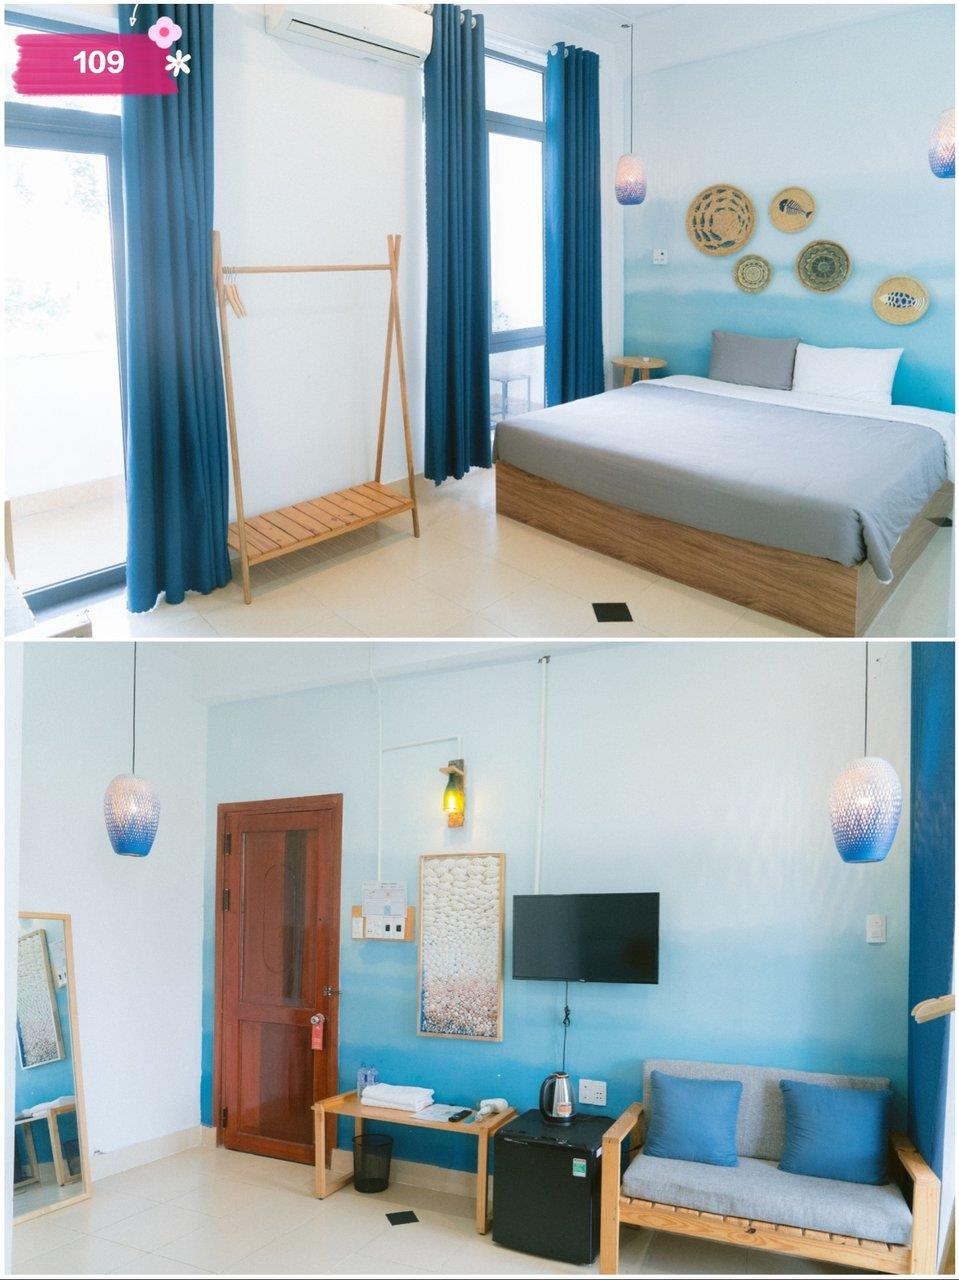 Standard Double Room - Khách Sạn Joy Phú Yên